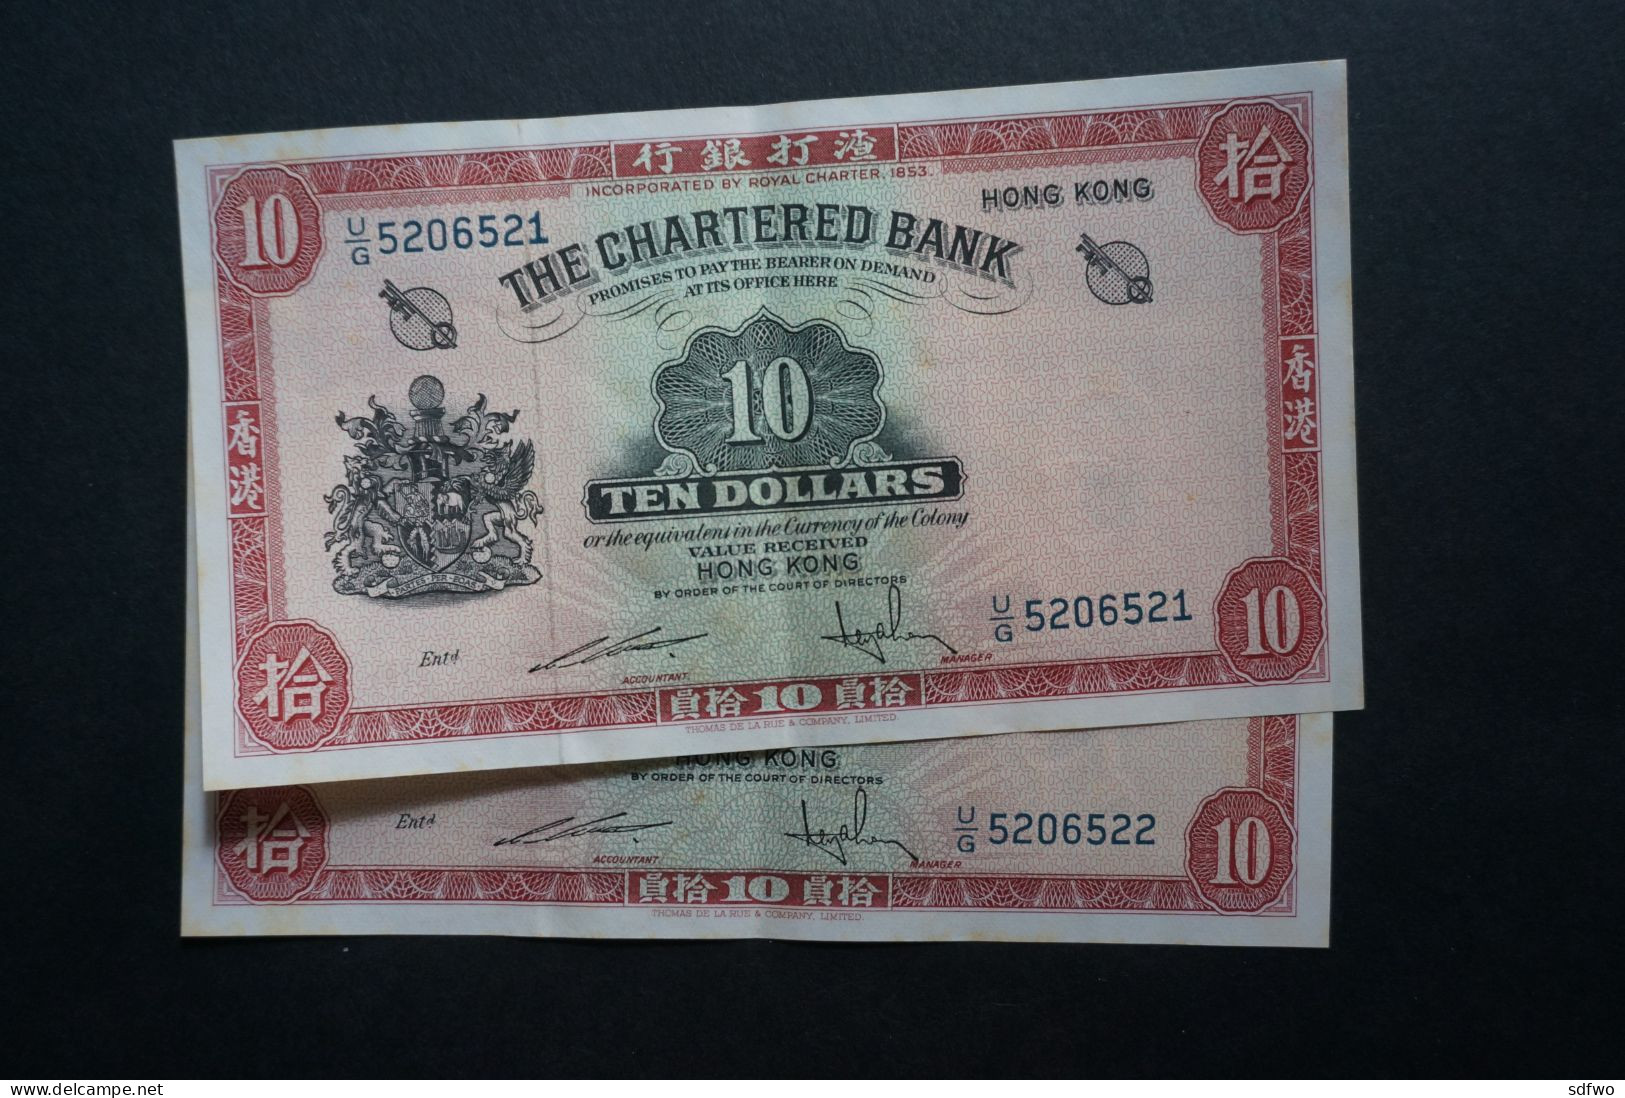 (M) 1962 HONG KONG OLD ISSUE - THE CHARTERED BANK 10 DOLLARS - #U/G 5206521 To 22 (2 Pcs) - Hongkong